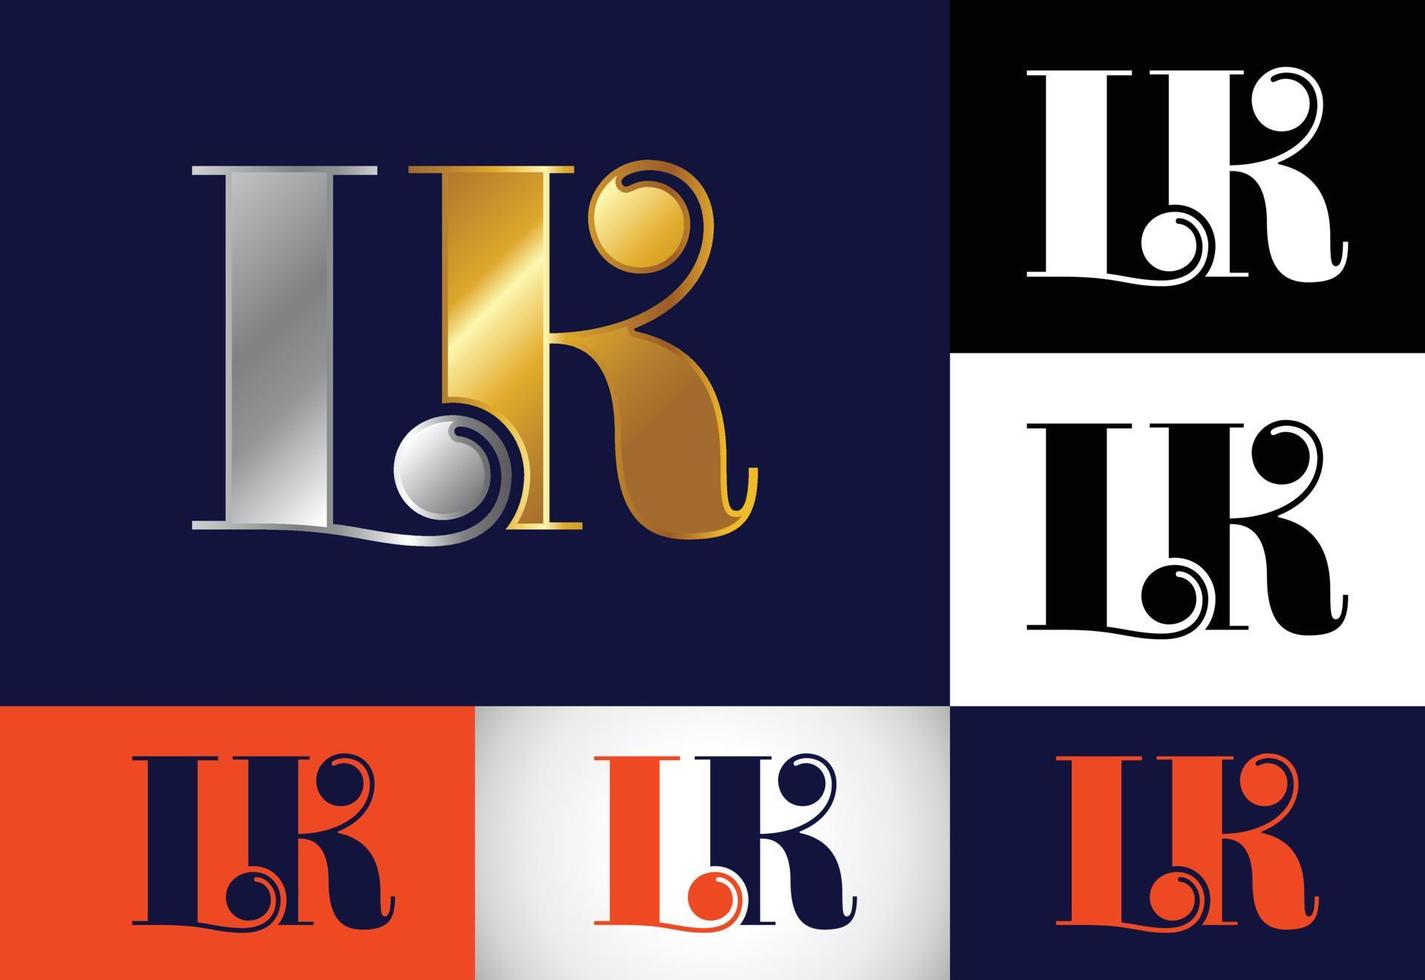 modèle de vecteur de conception de logo lettre monogramme initial lk. création de logo de lettre lk